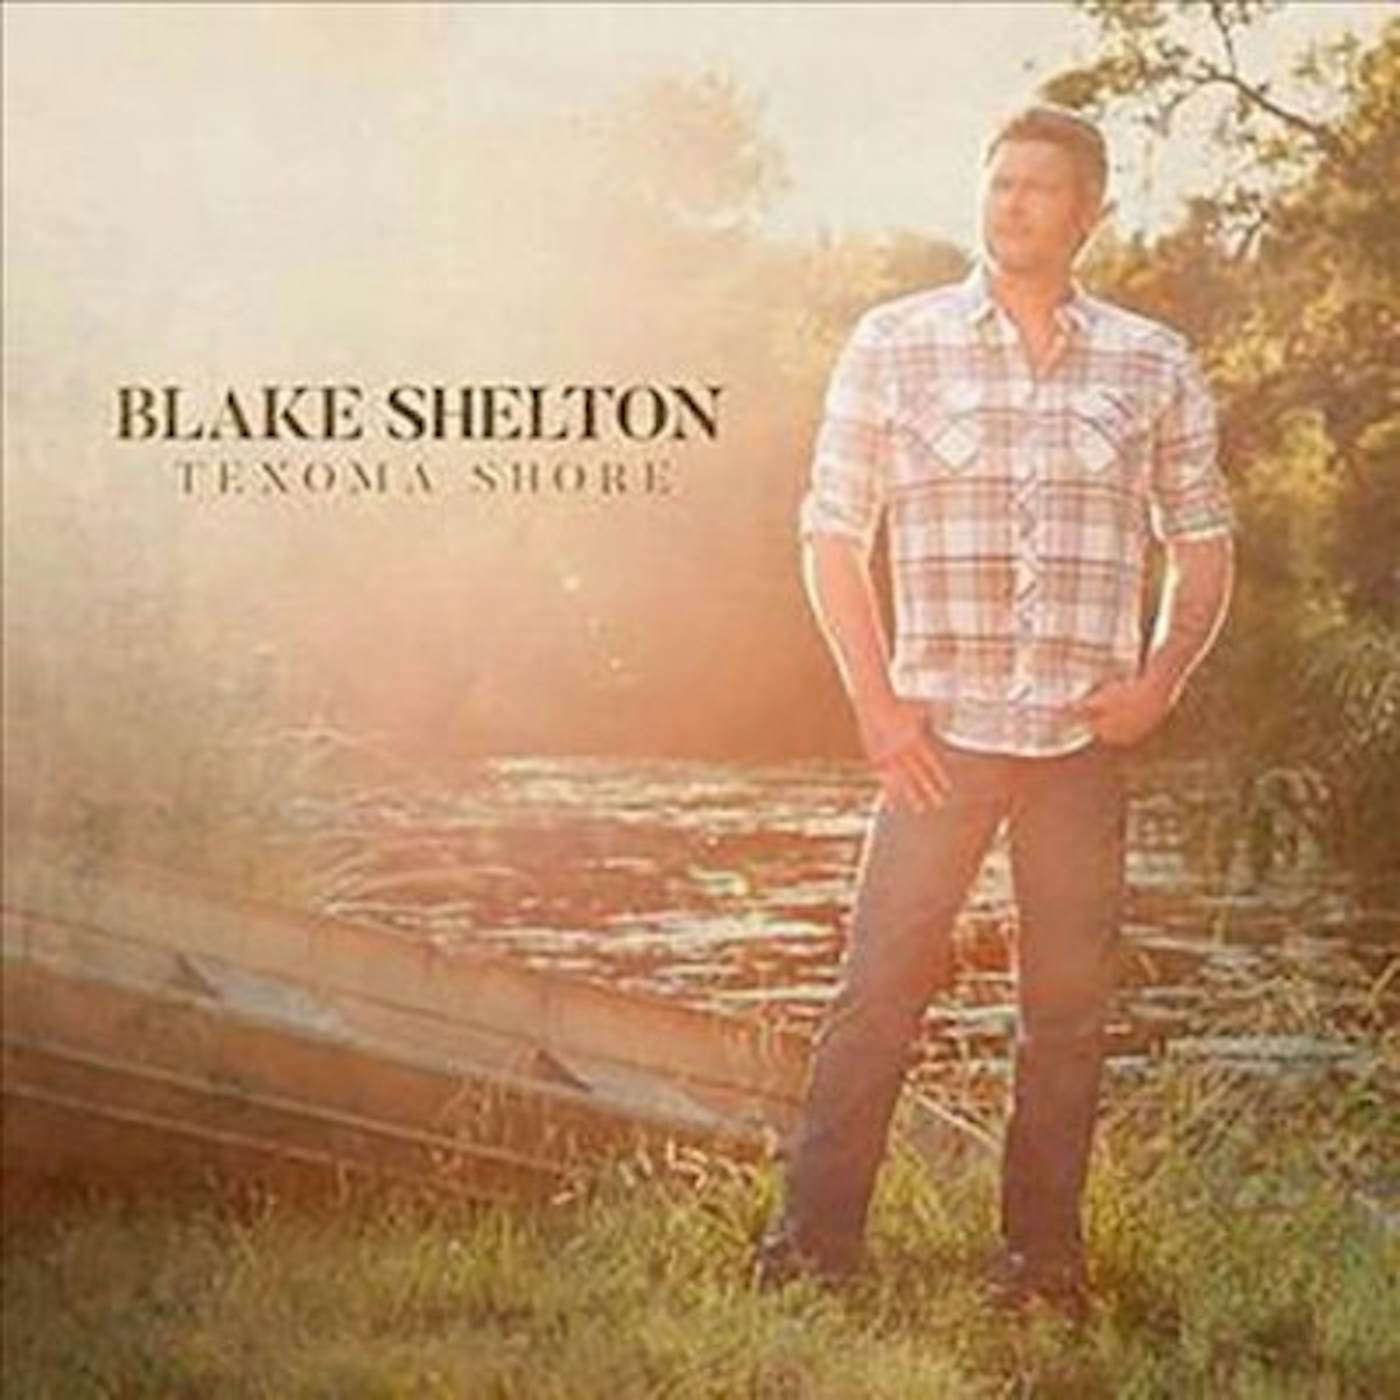 Blake Shelton Texoma Shore CD